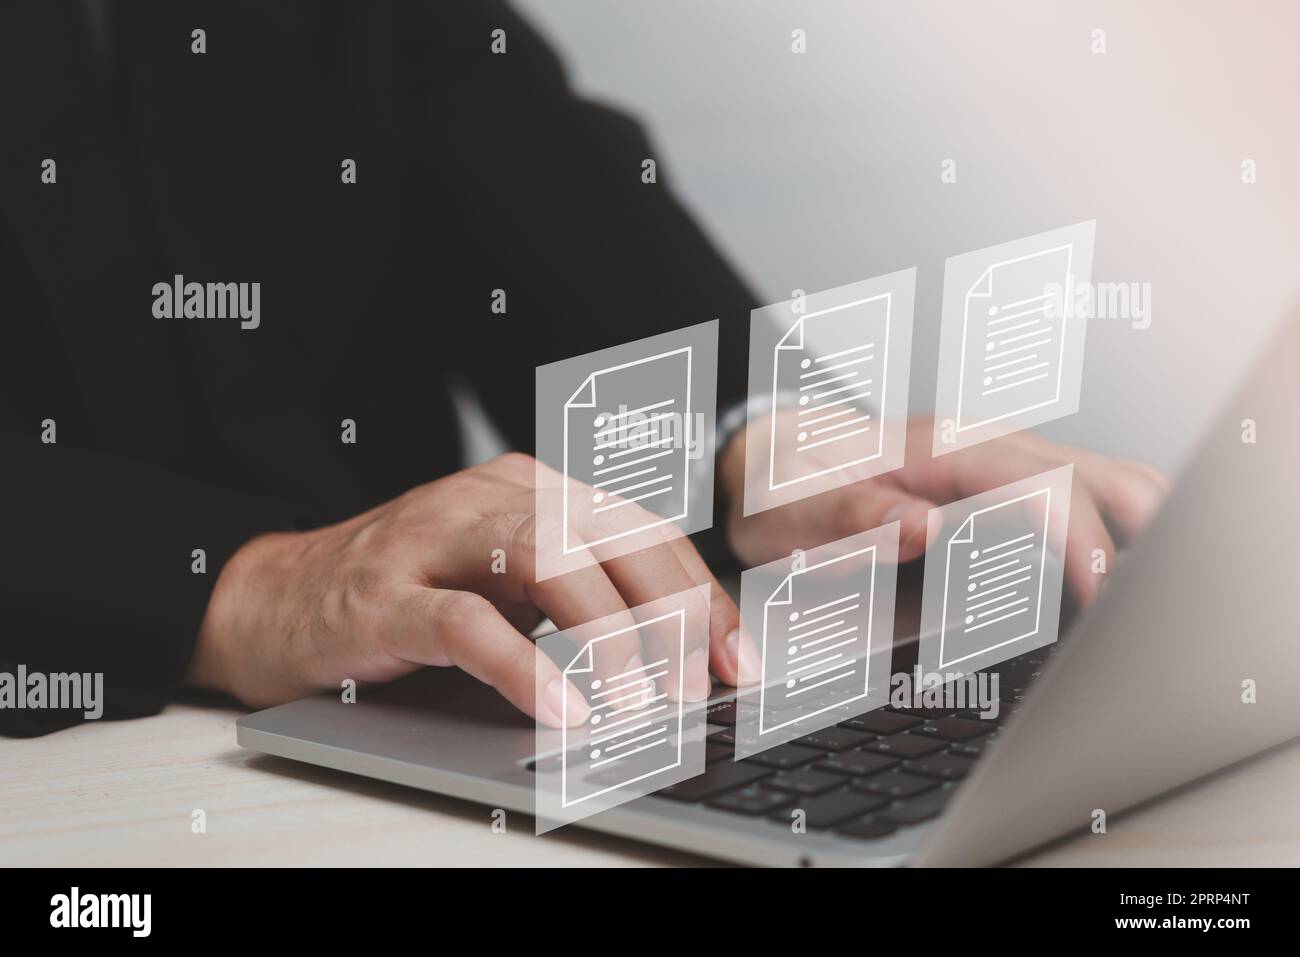 Schermo virtuale del sistema di gestione delle informazioni aziendali DMS (Digital Document Management System). Foto Stock